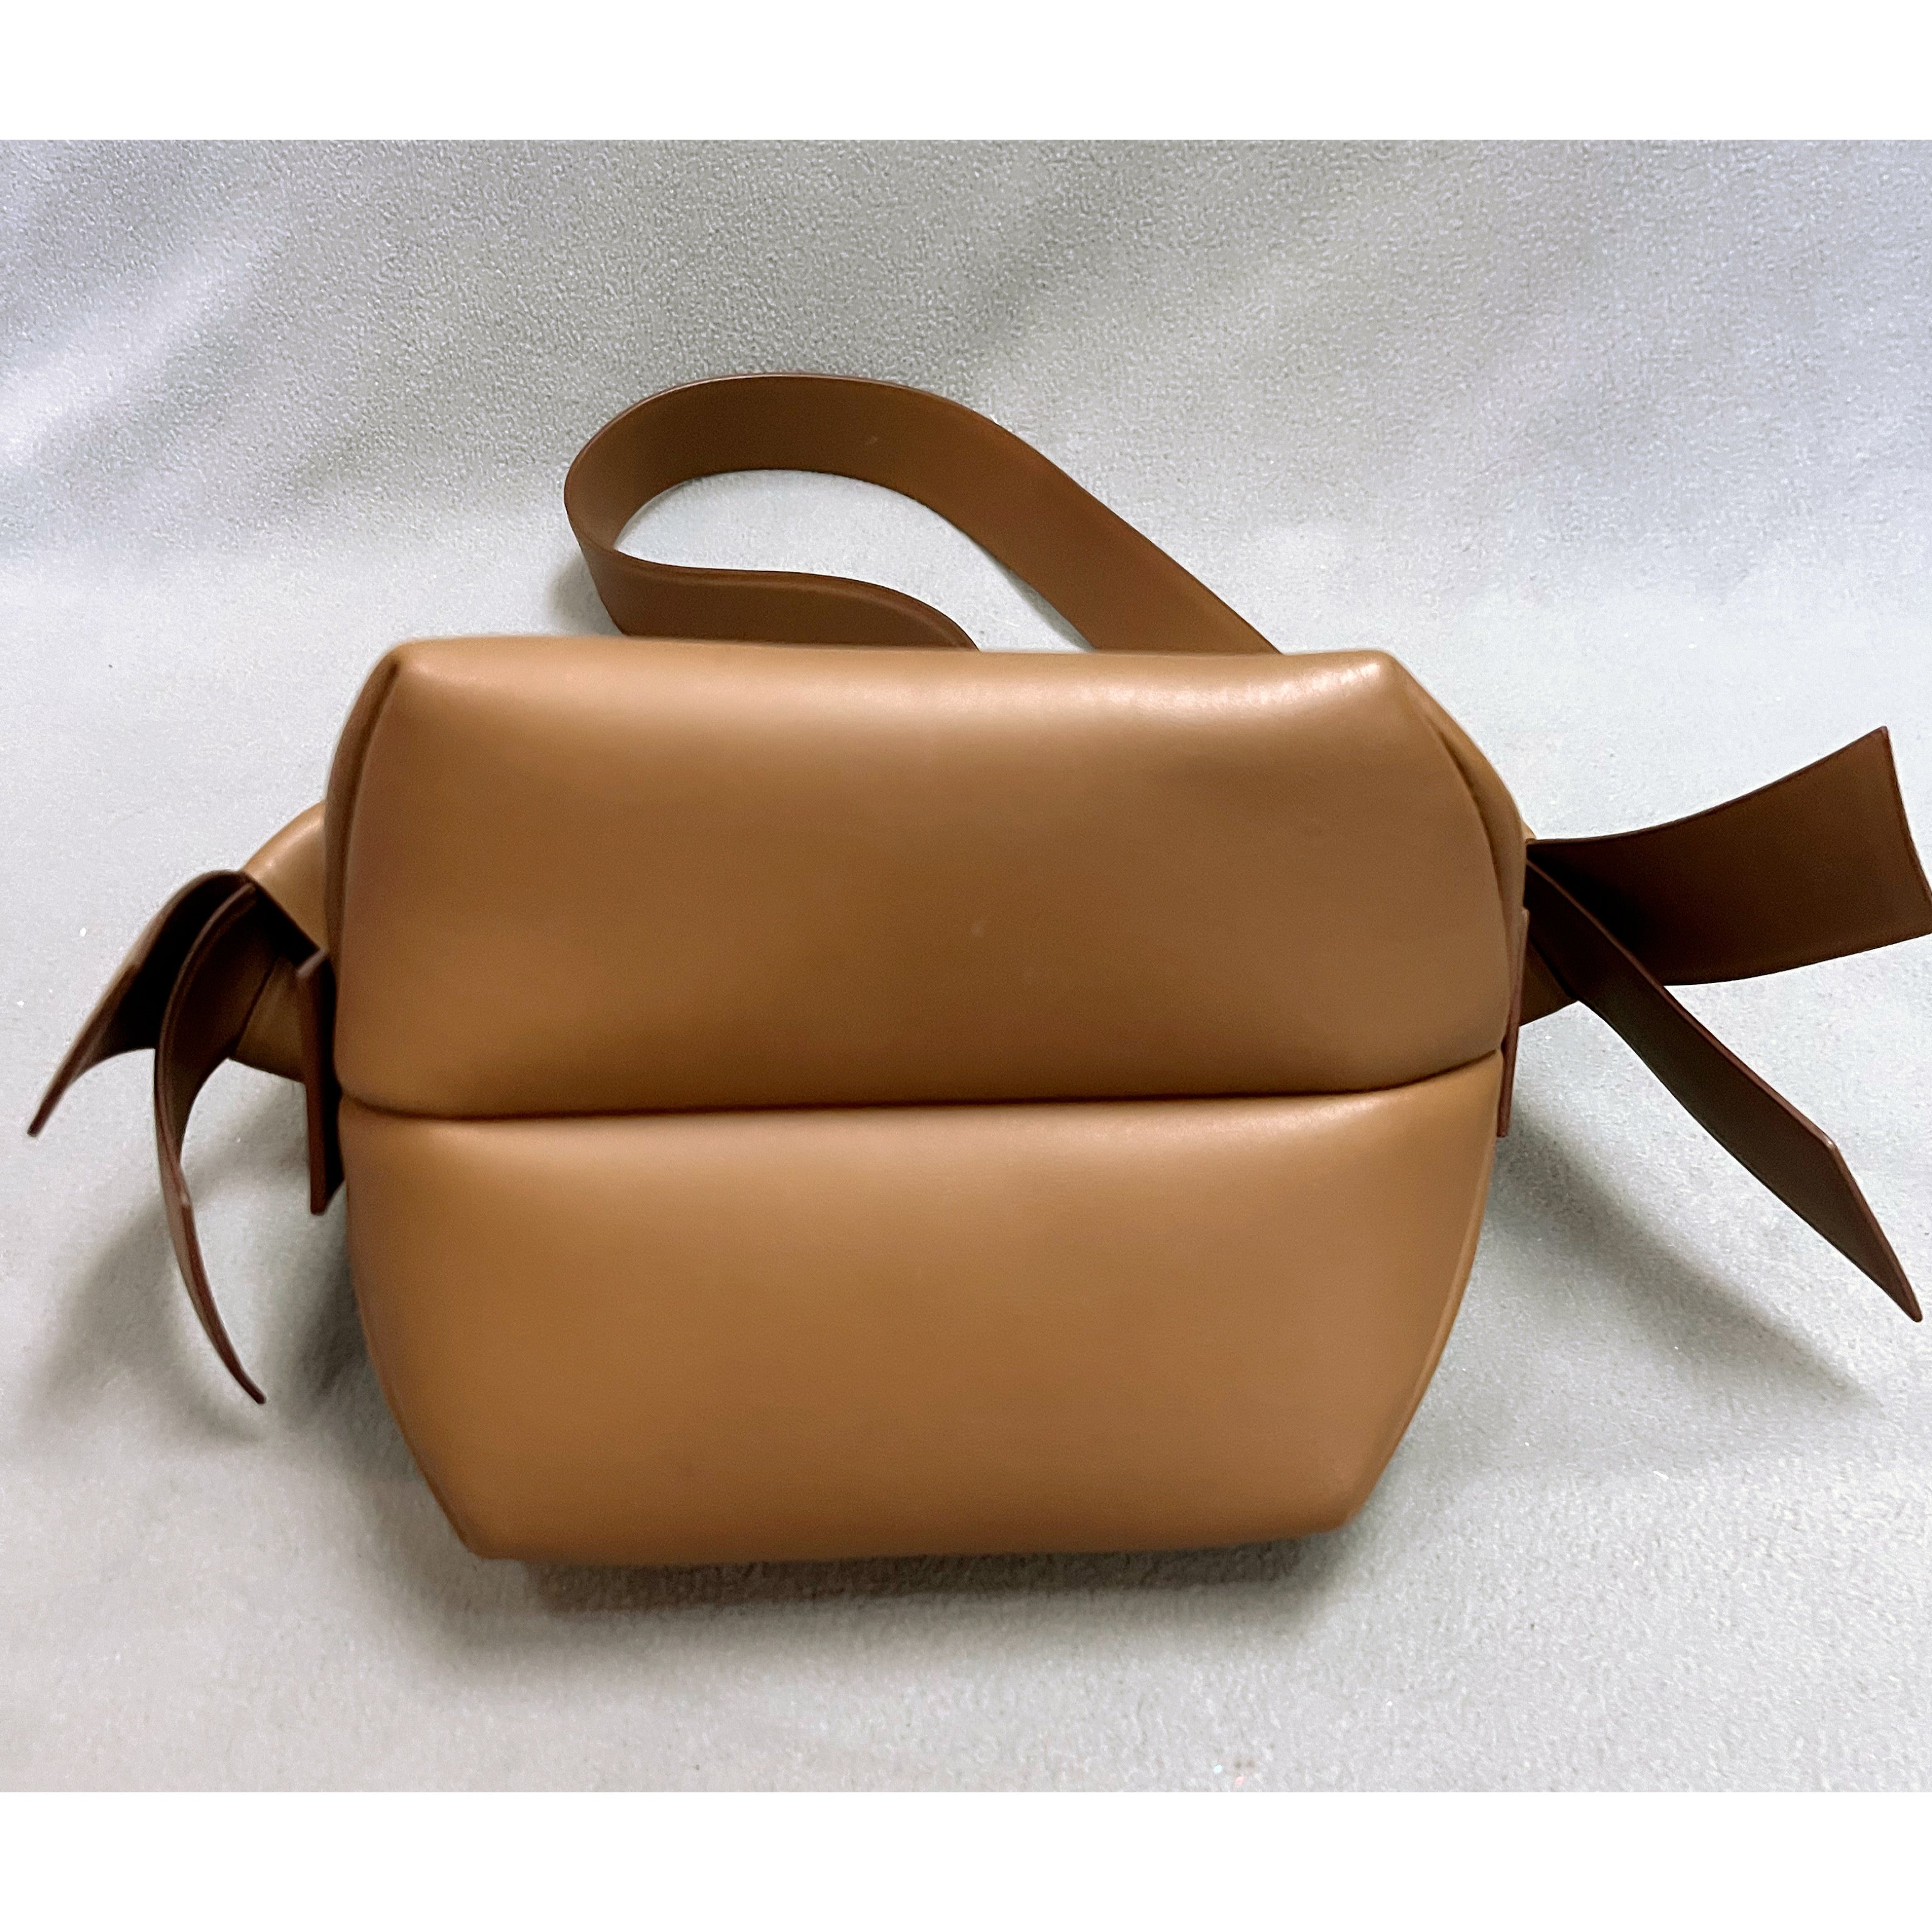 Acne Studios camel brown Mini Musubi bag, LIKE NEW!